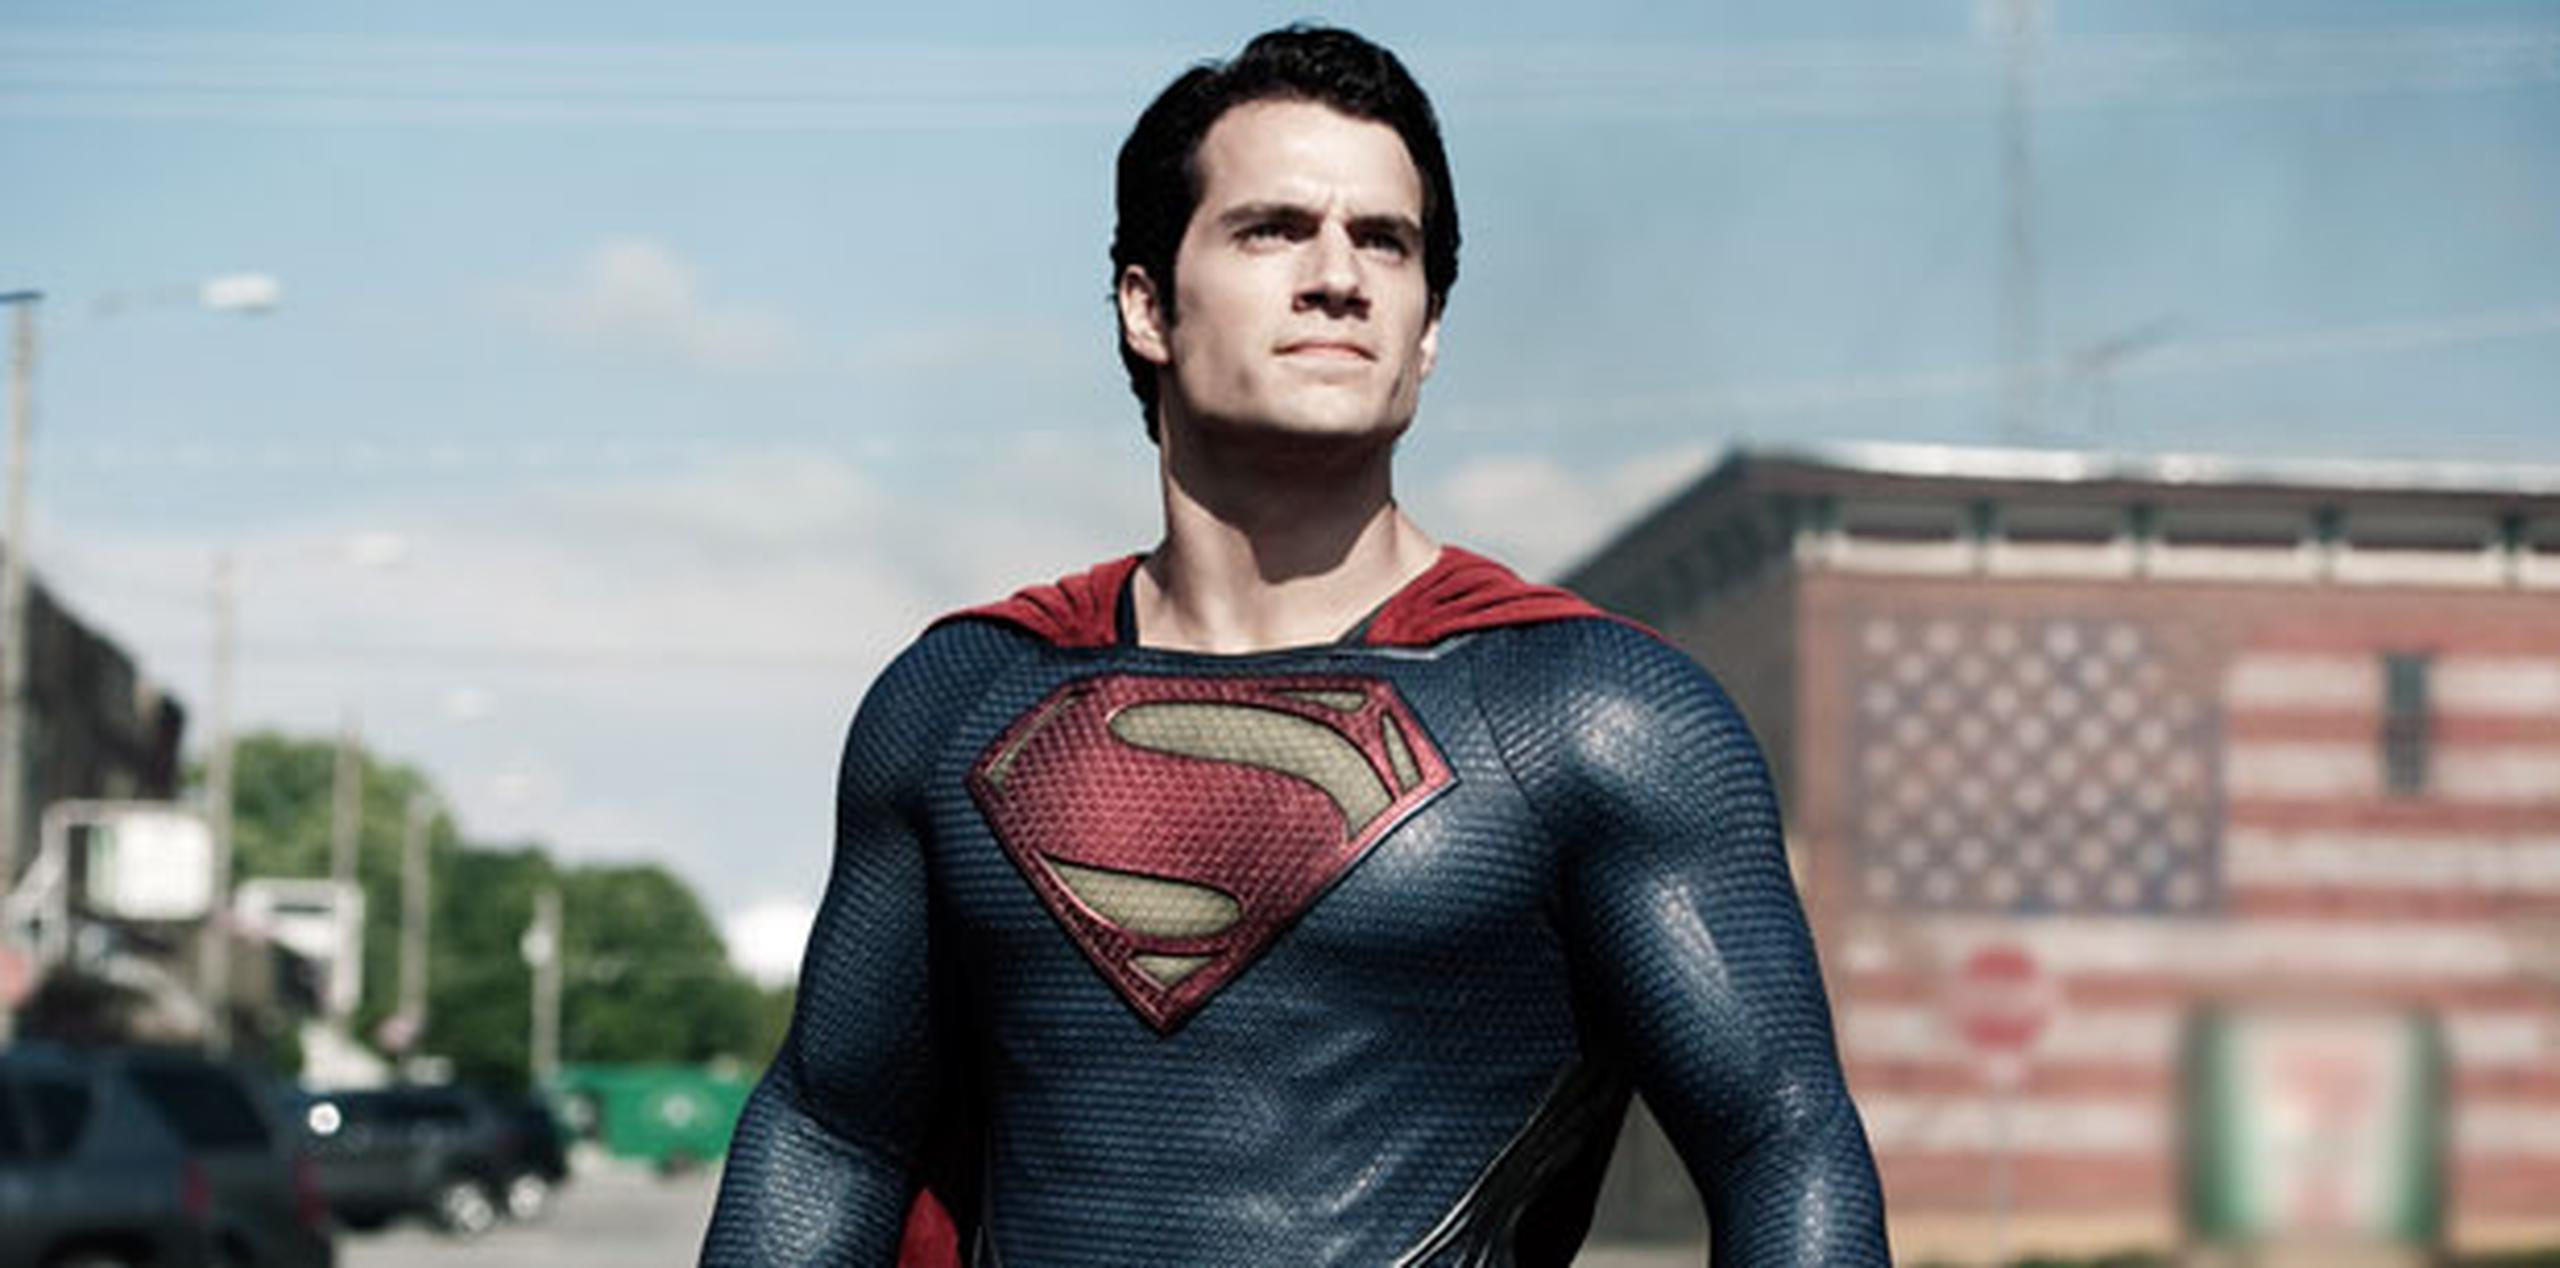 Philippe Chappuis, con su alias Zep, se burla de los problemas en la intimidad de Superman, entre otros superhéroes. (Archivo)